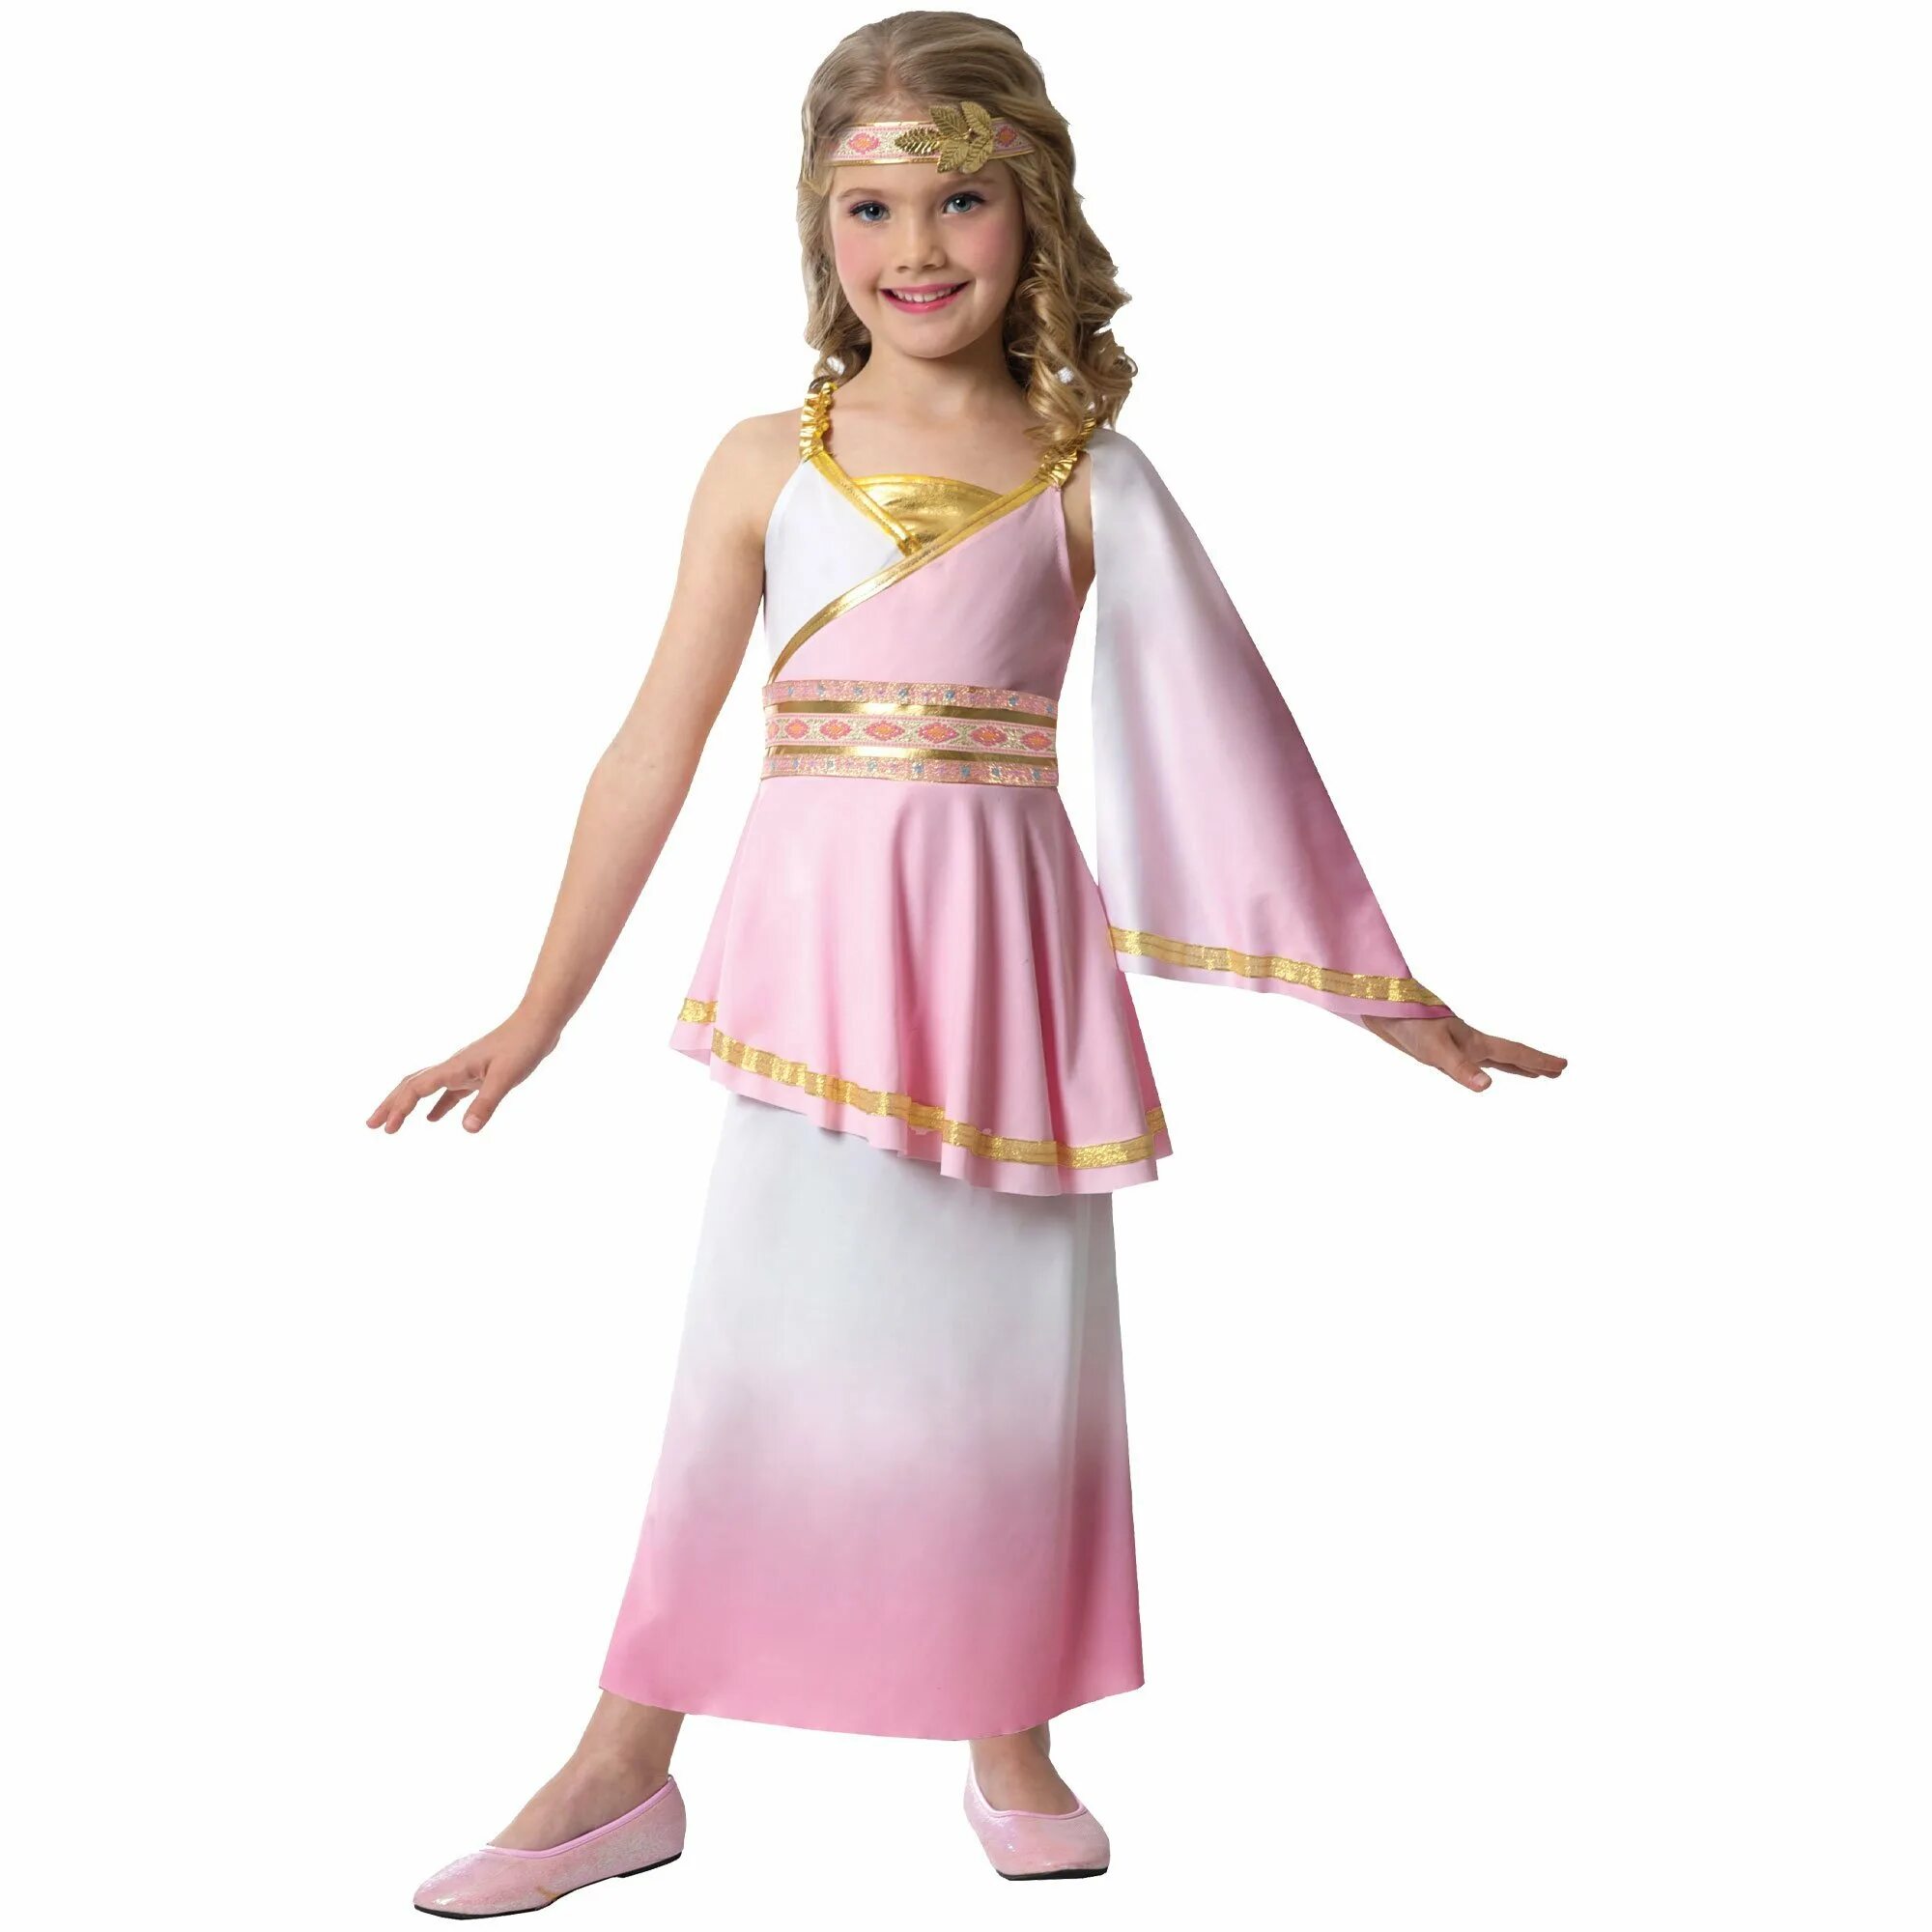 Греческий для детей. Костюм Греческая девочка. Костюм греческой Богини для девочки. Греческое платье для девочки. Греческие костюмы для детей.